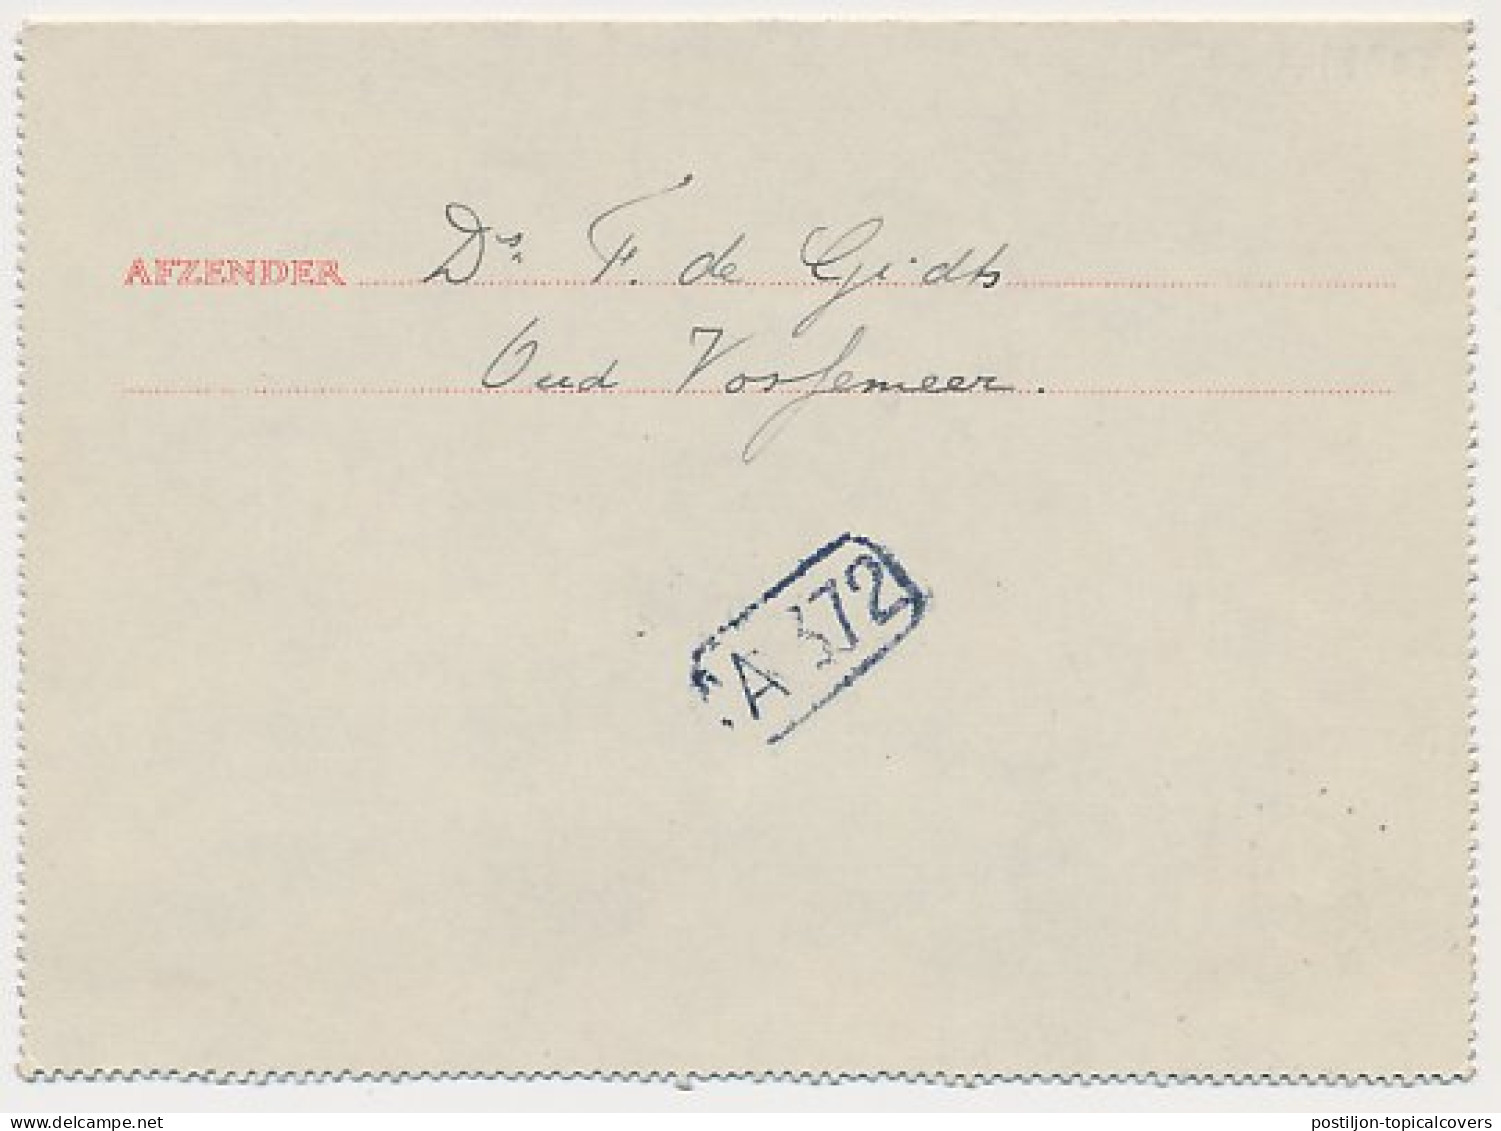 Postblad G. 17 X Oud Vossemeer - Den Haag 26.3.1930 - Entiers Postaux